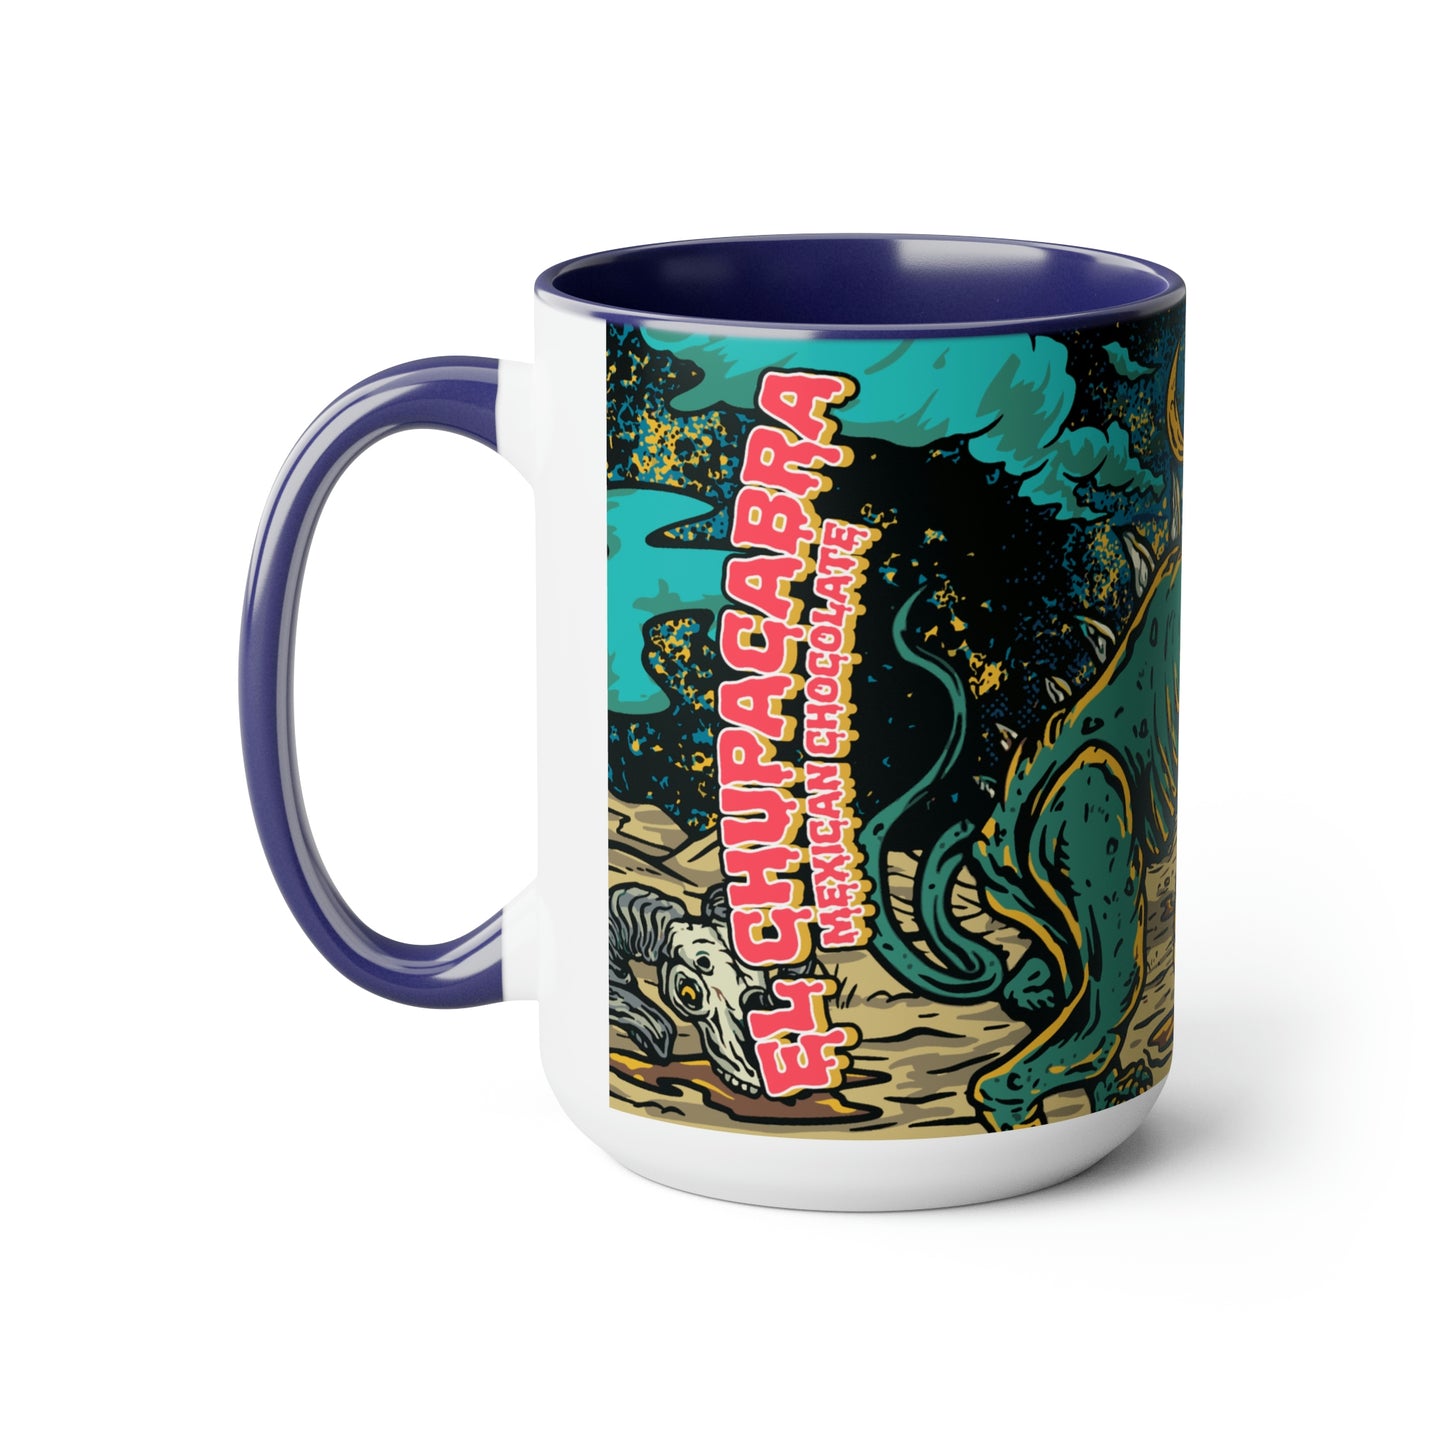 El Chupacabra Mythic Mug